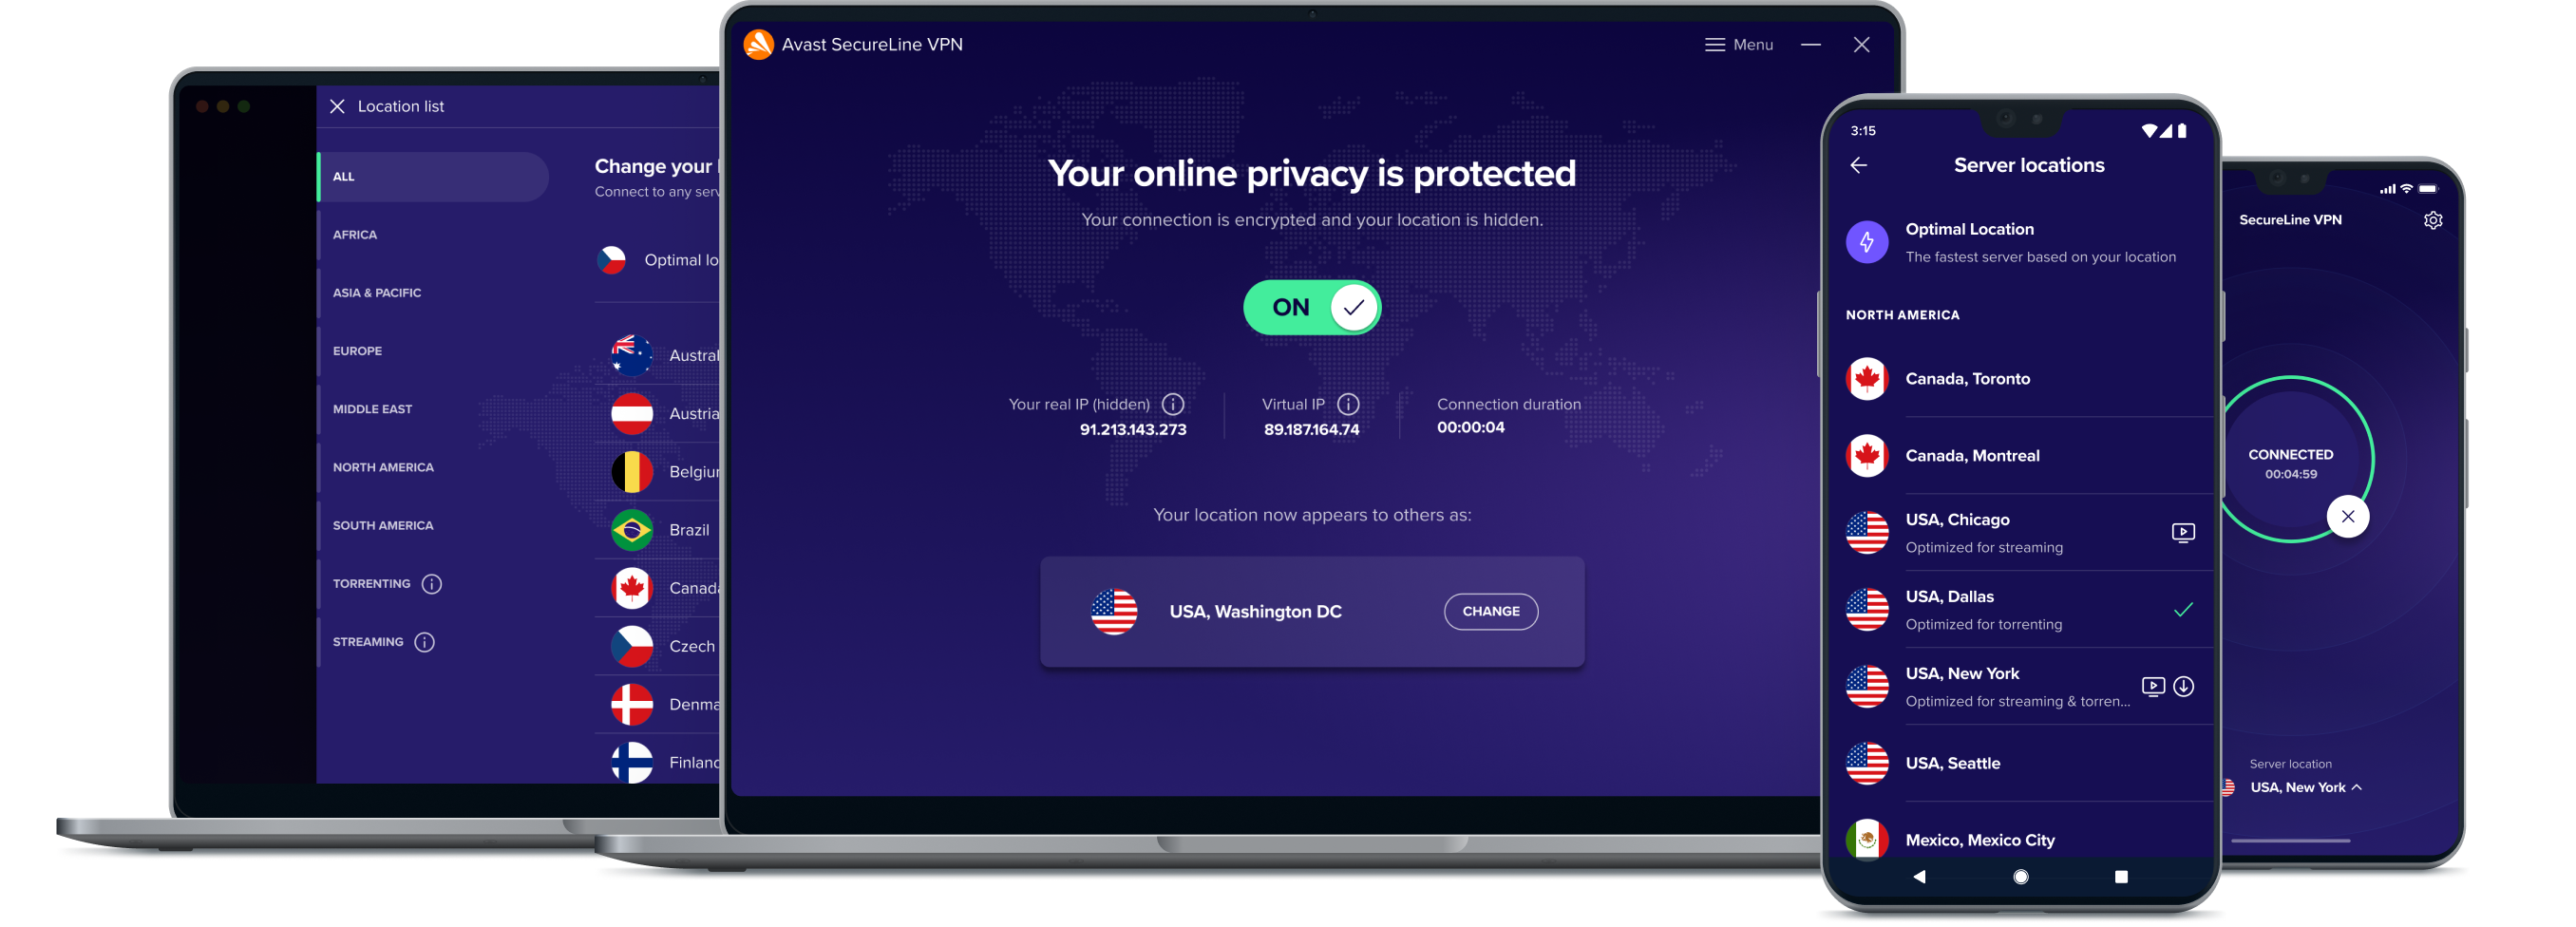 Zyskaj większą swobodę w Internecie dzięki naszej usłudze VPN